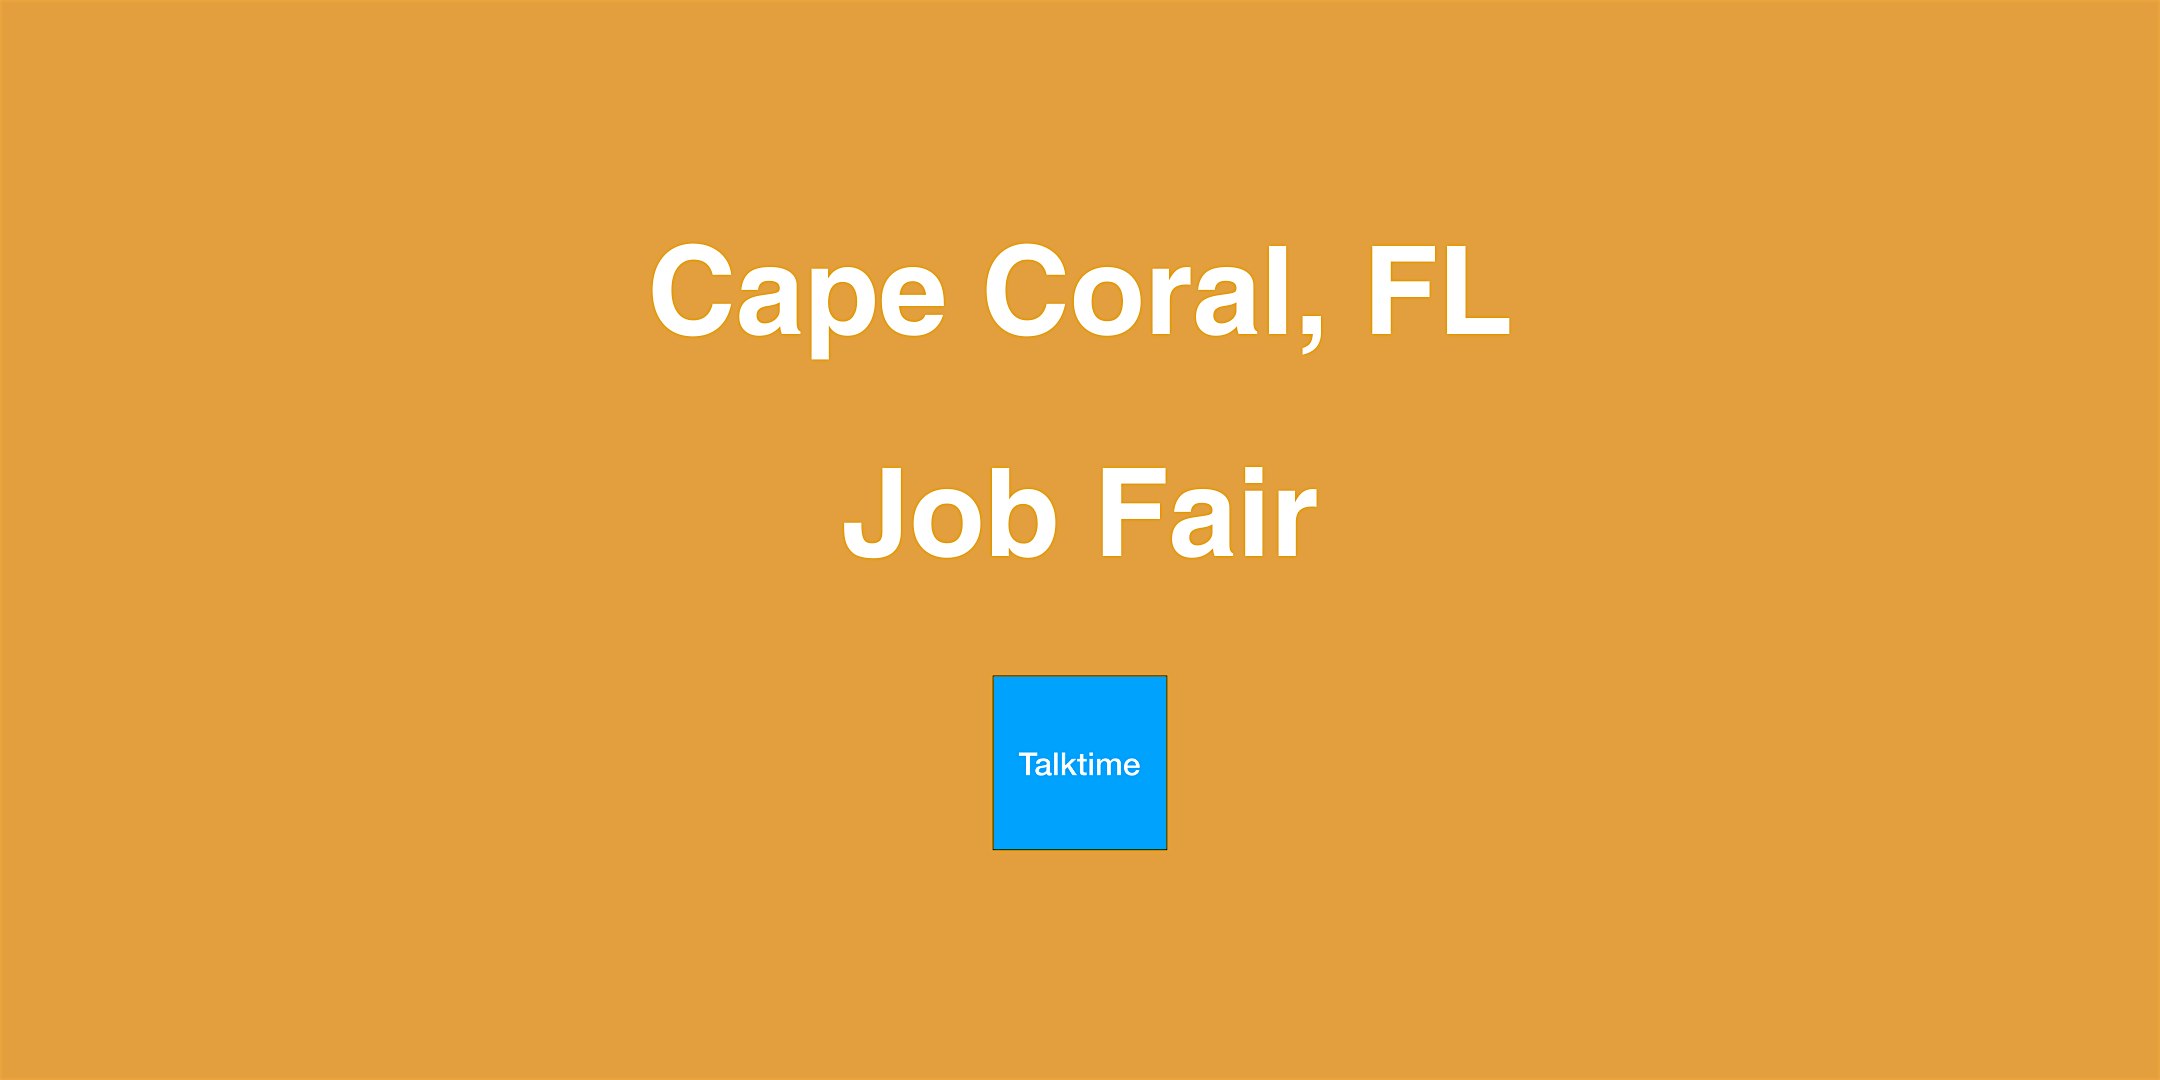 Job Fair - Cape Coral